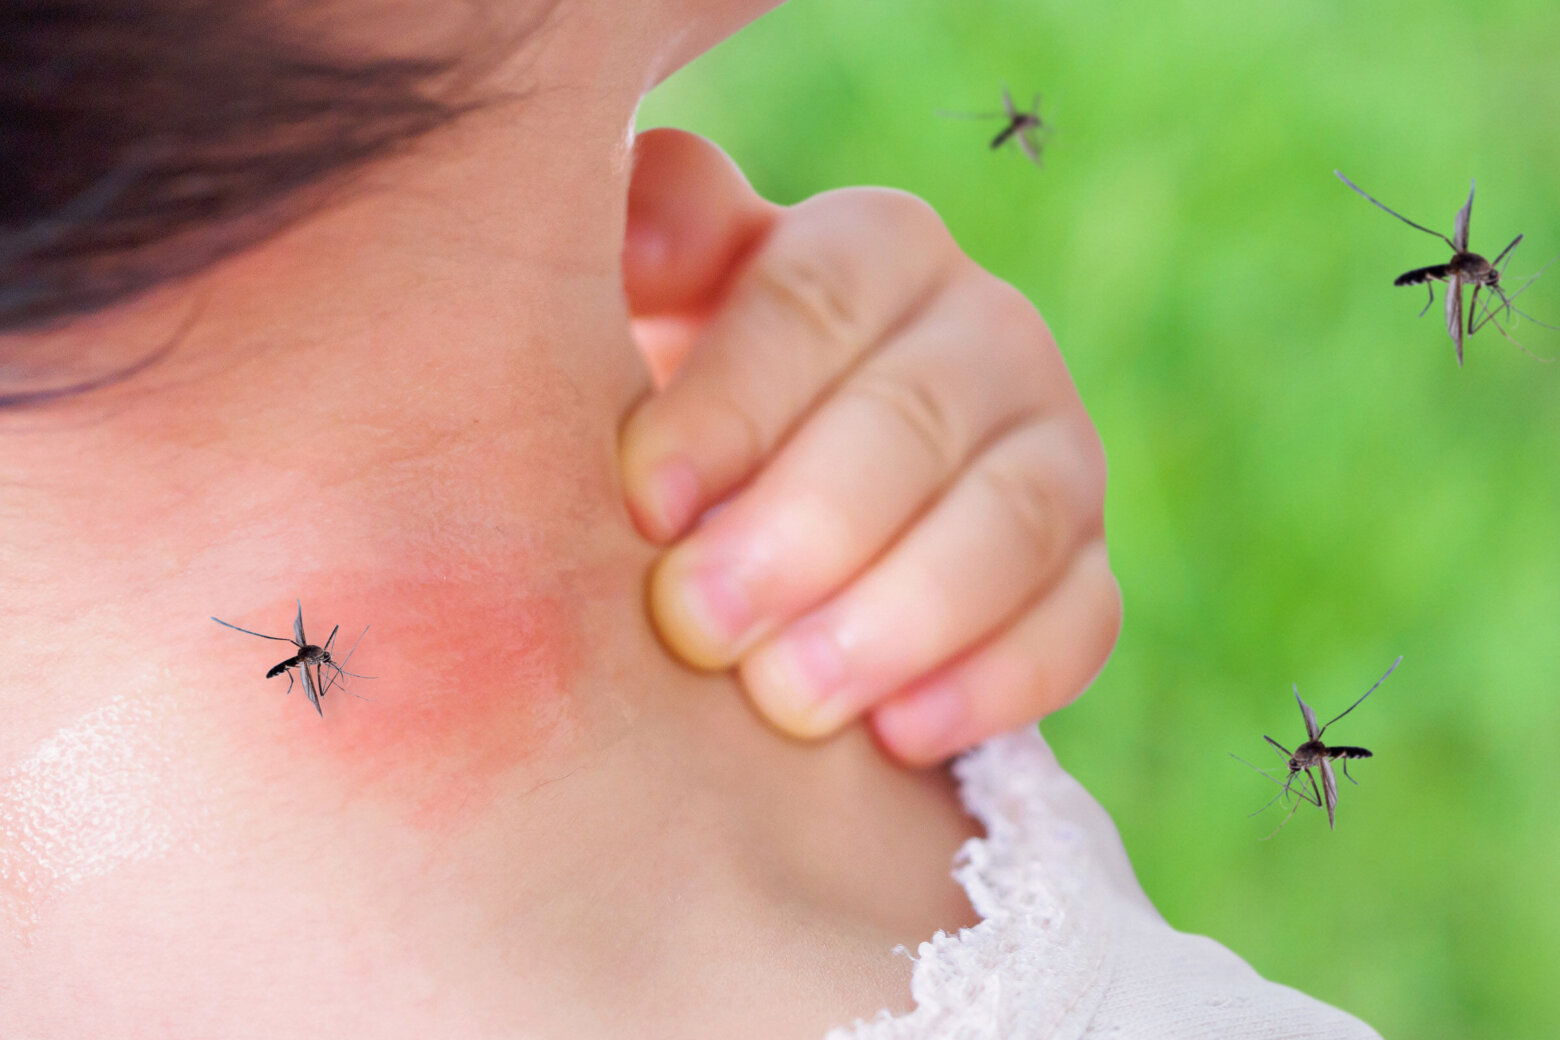 anopheles mosquito bite